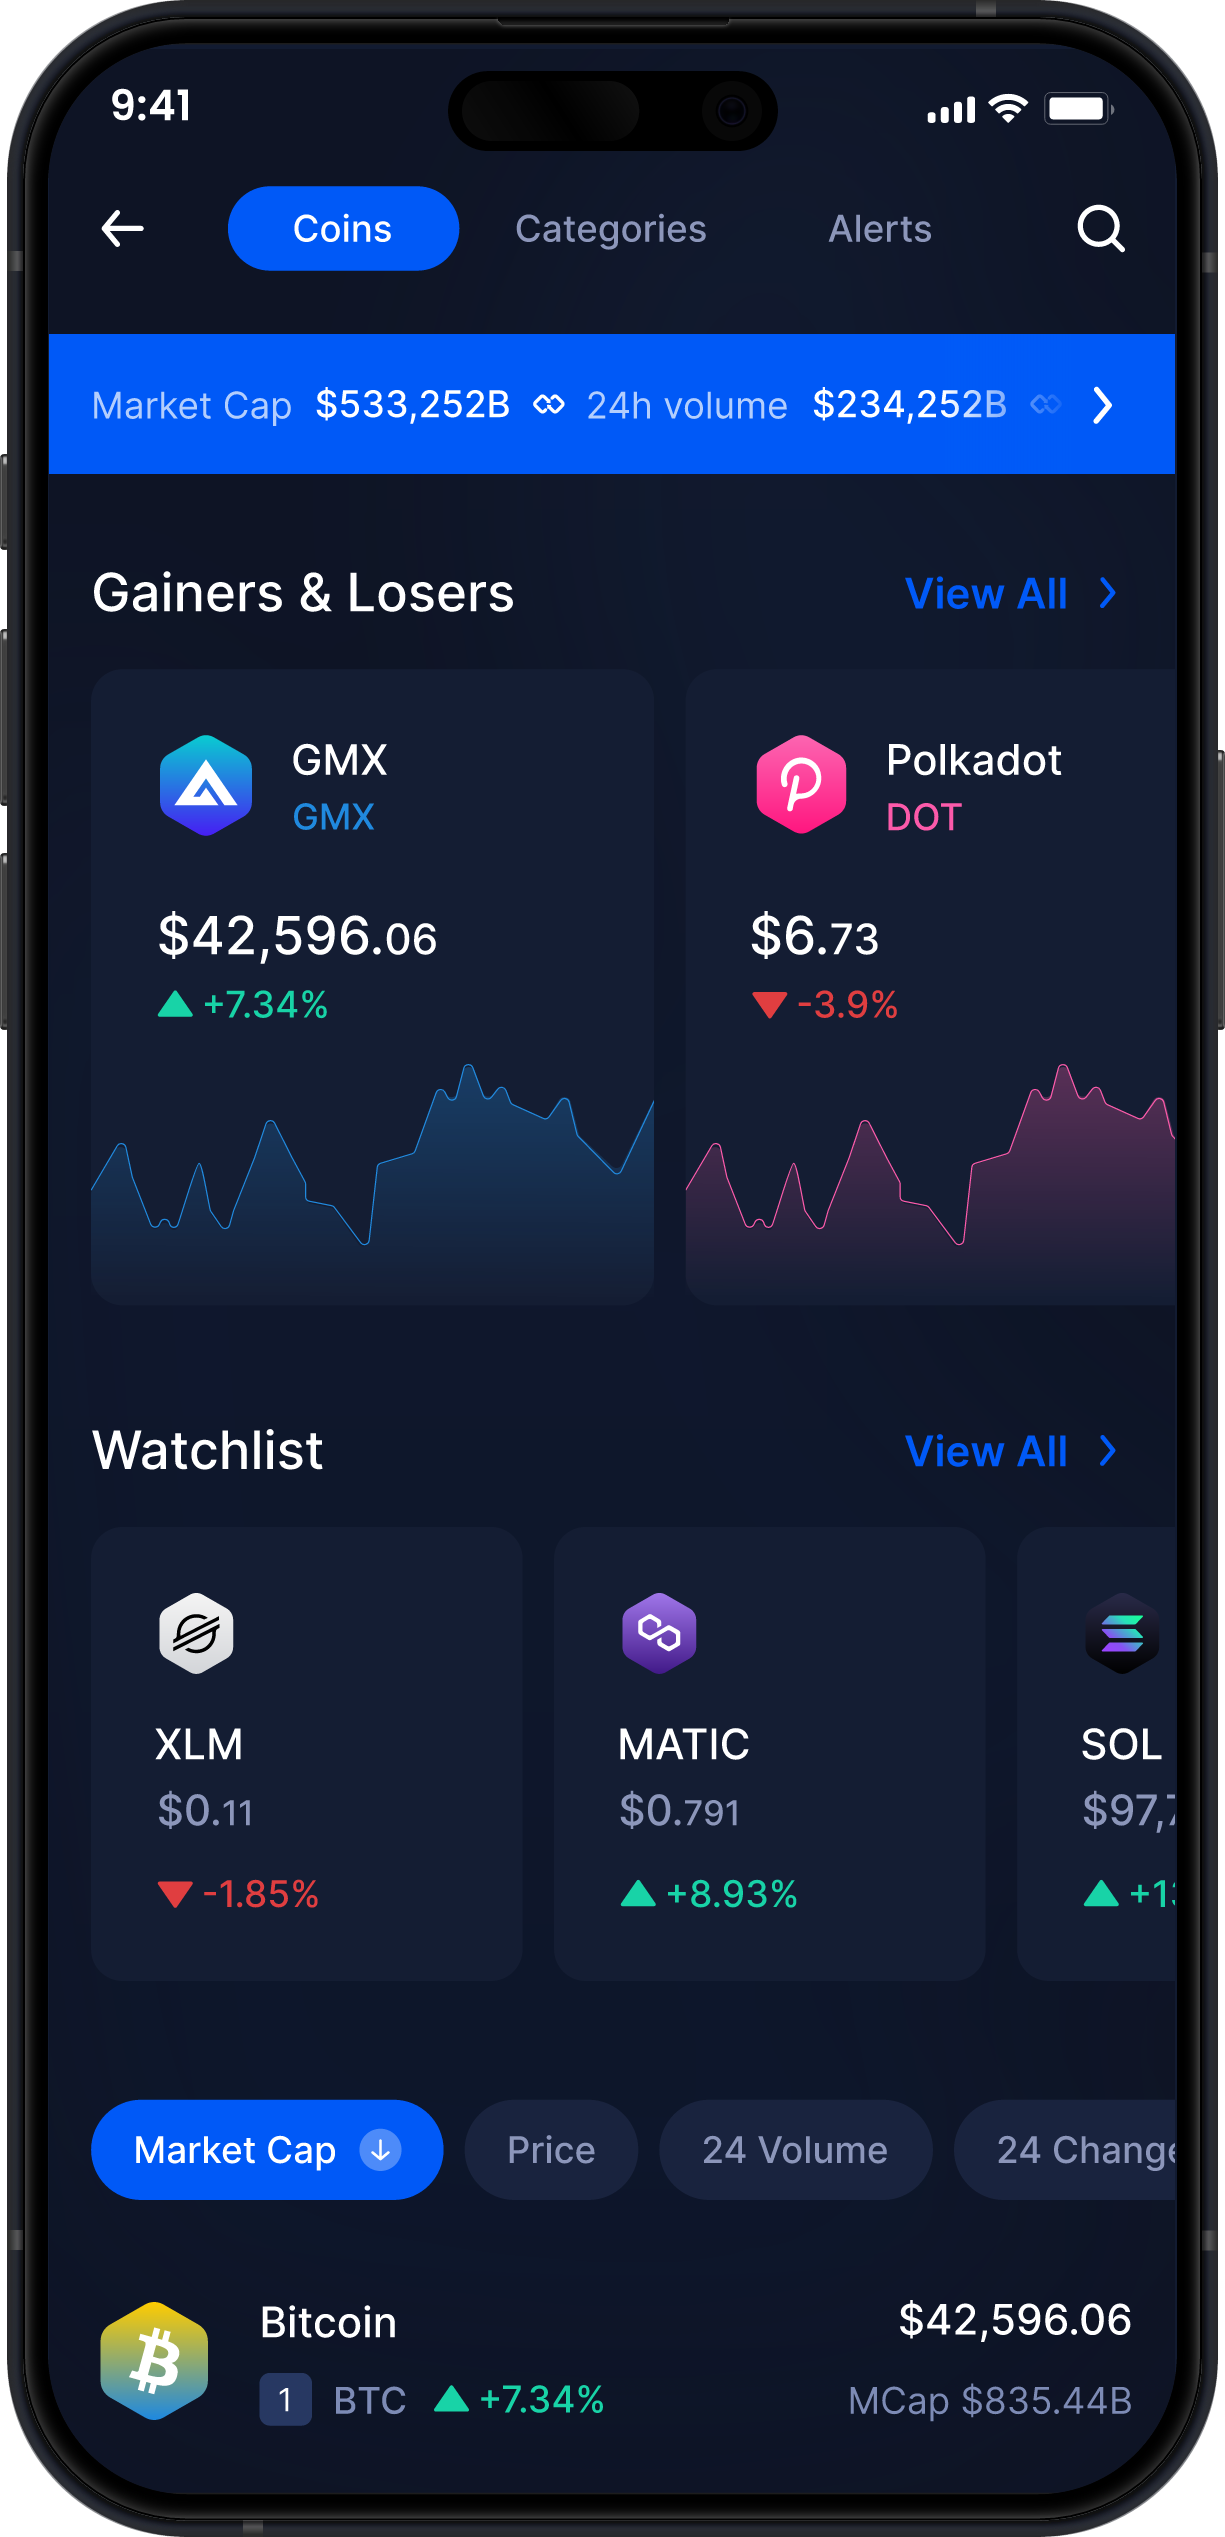 Infinity Mobile GMX Wallet - Statistiche e Monitoraggio GMX